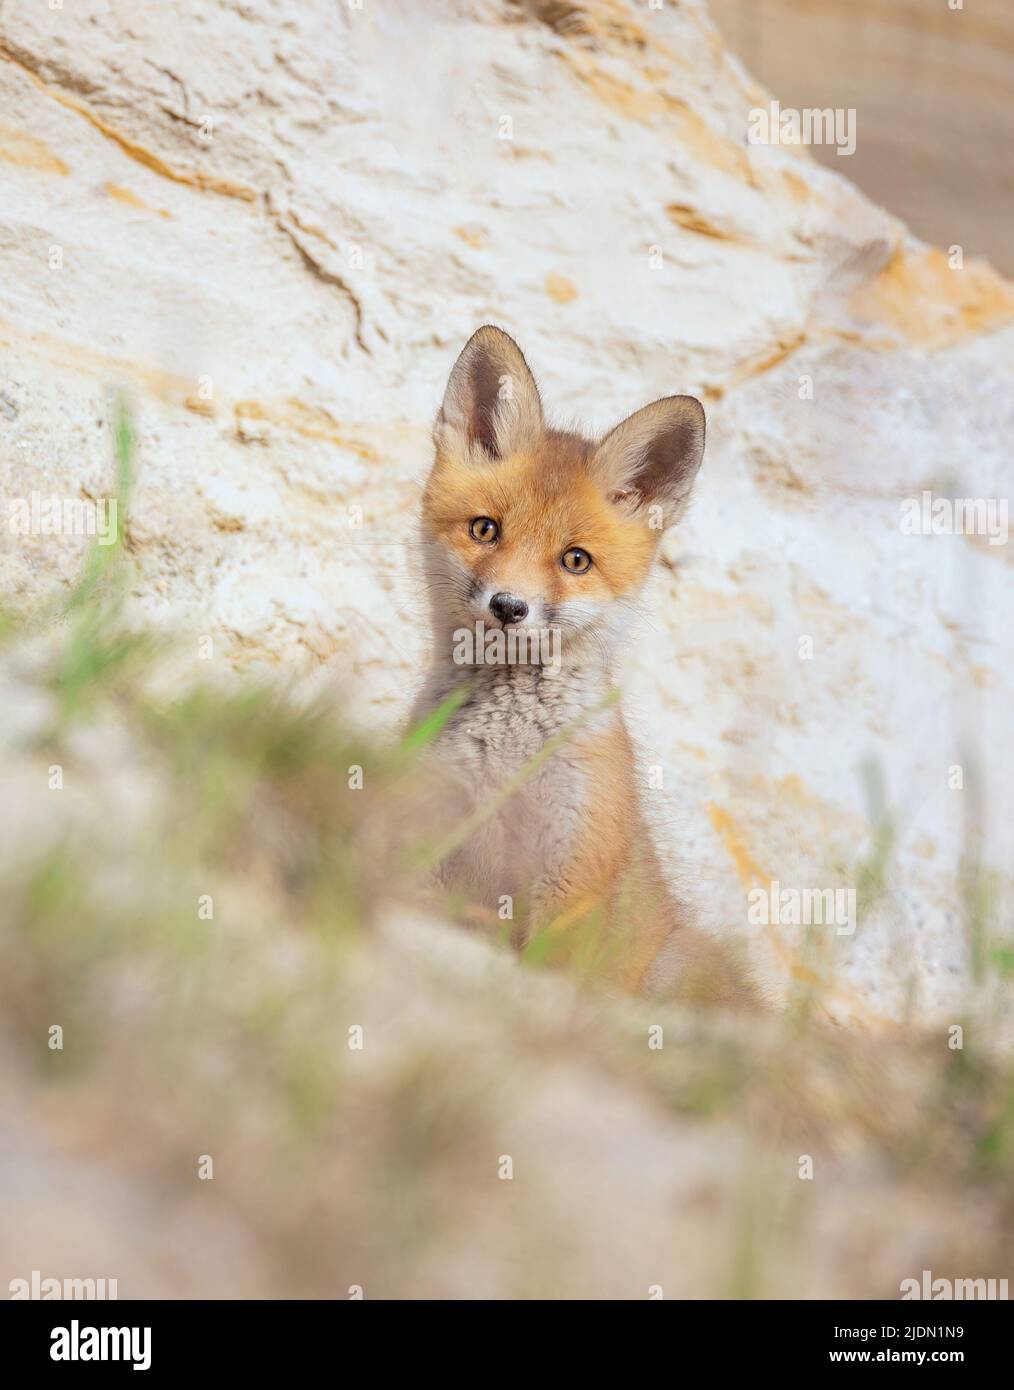 Le renard mignon Vulpes vulpes cub a grimpé hors de la terrier et regarde autour, la meilleure photo. Banque D'Images